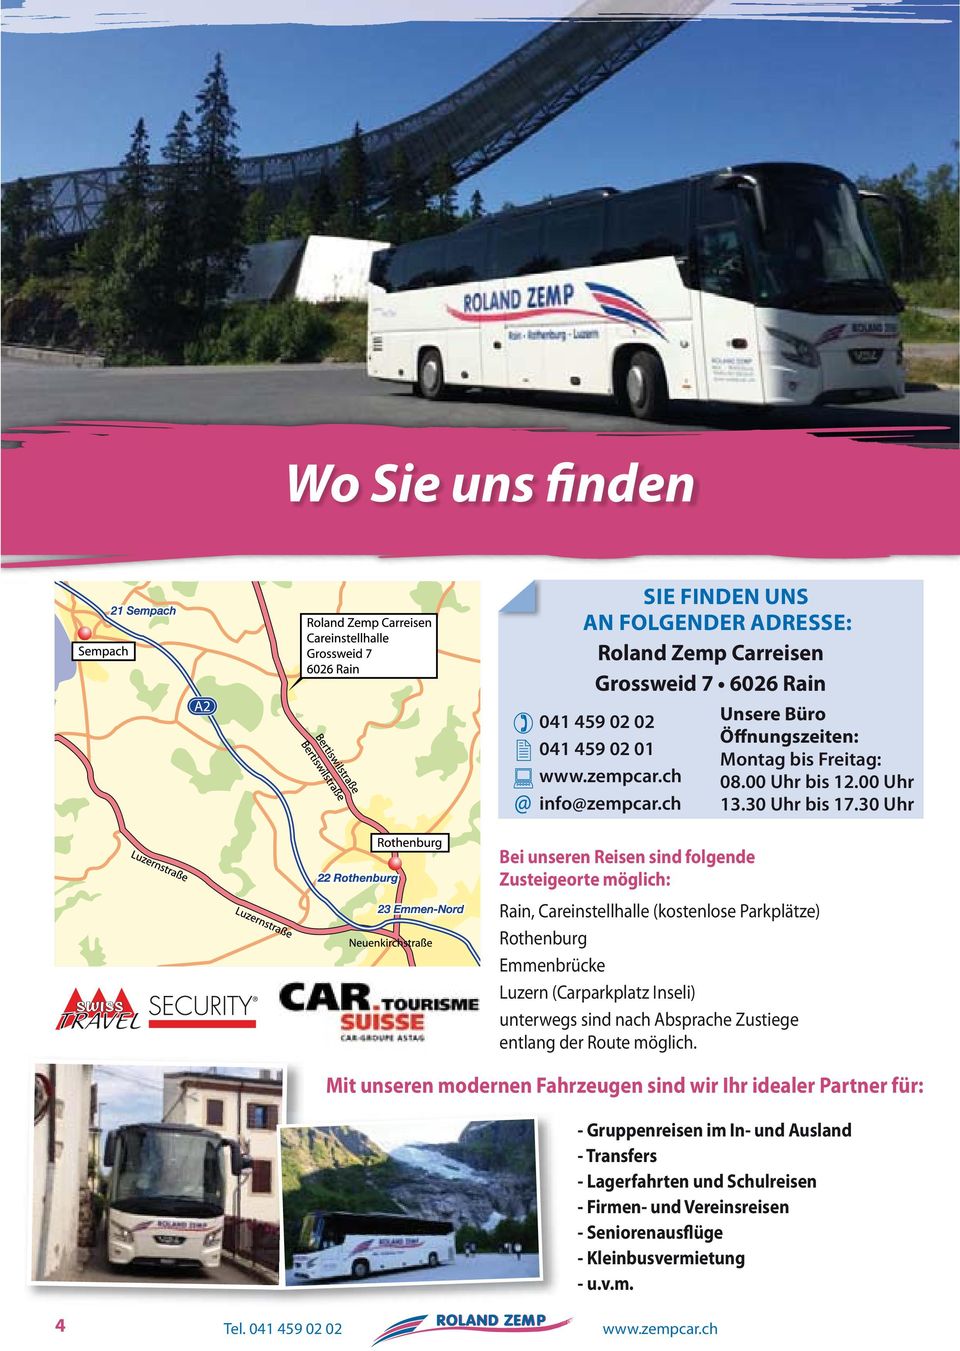 30 Uhr Bei unseren Reisen sind folgende Zusteigeorte möglich: Rain, Careinstellhalle (kostenlose Parkplätze) Rothenburg Emmenbrücke Luzern (Carparkplatz Inseli) unterwegs sind